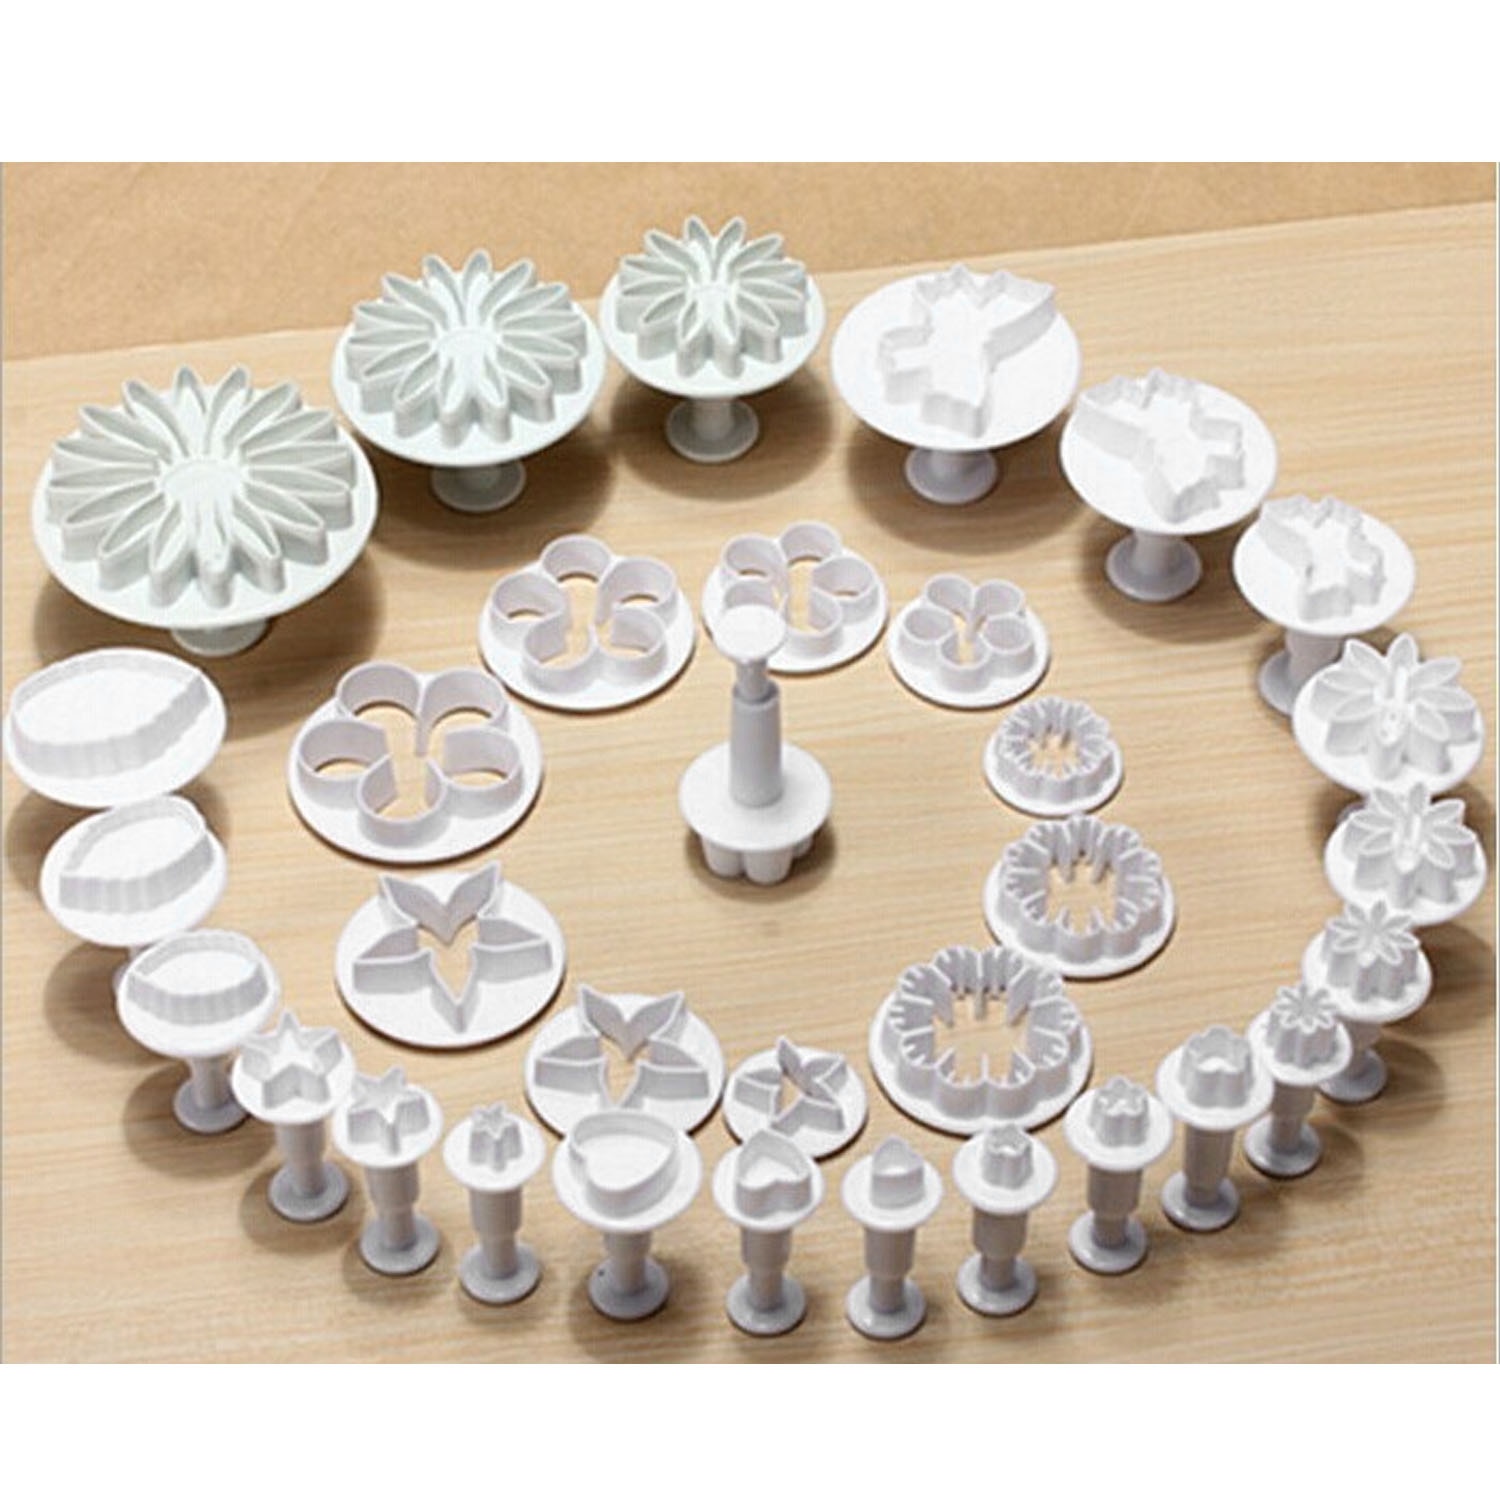 Behokic-cortador de émbolo para Fondant, herramientas de decoración de pasteles, galletas, molde artesanal 3D, juego de flores, 33 piezas